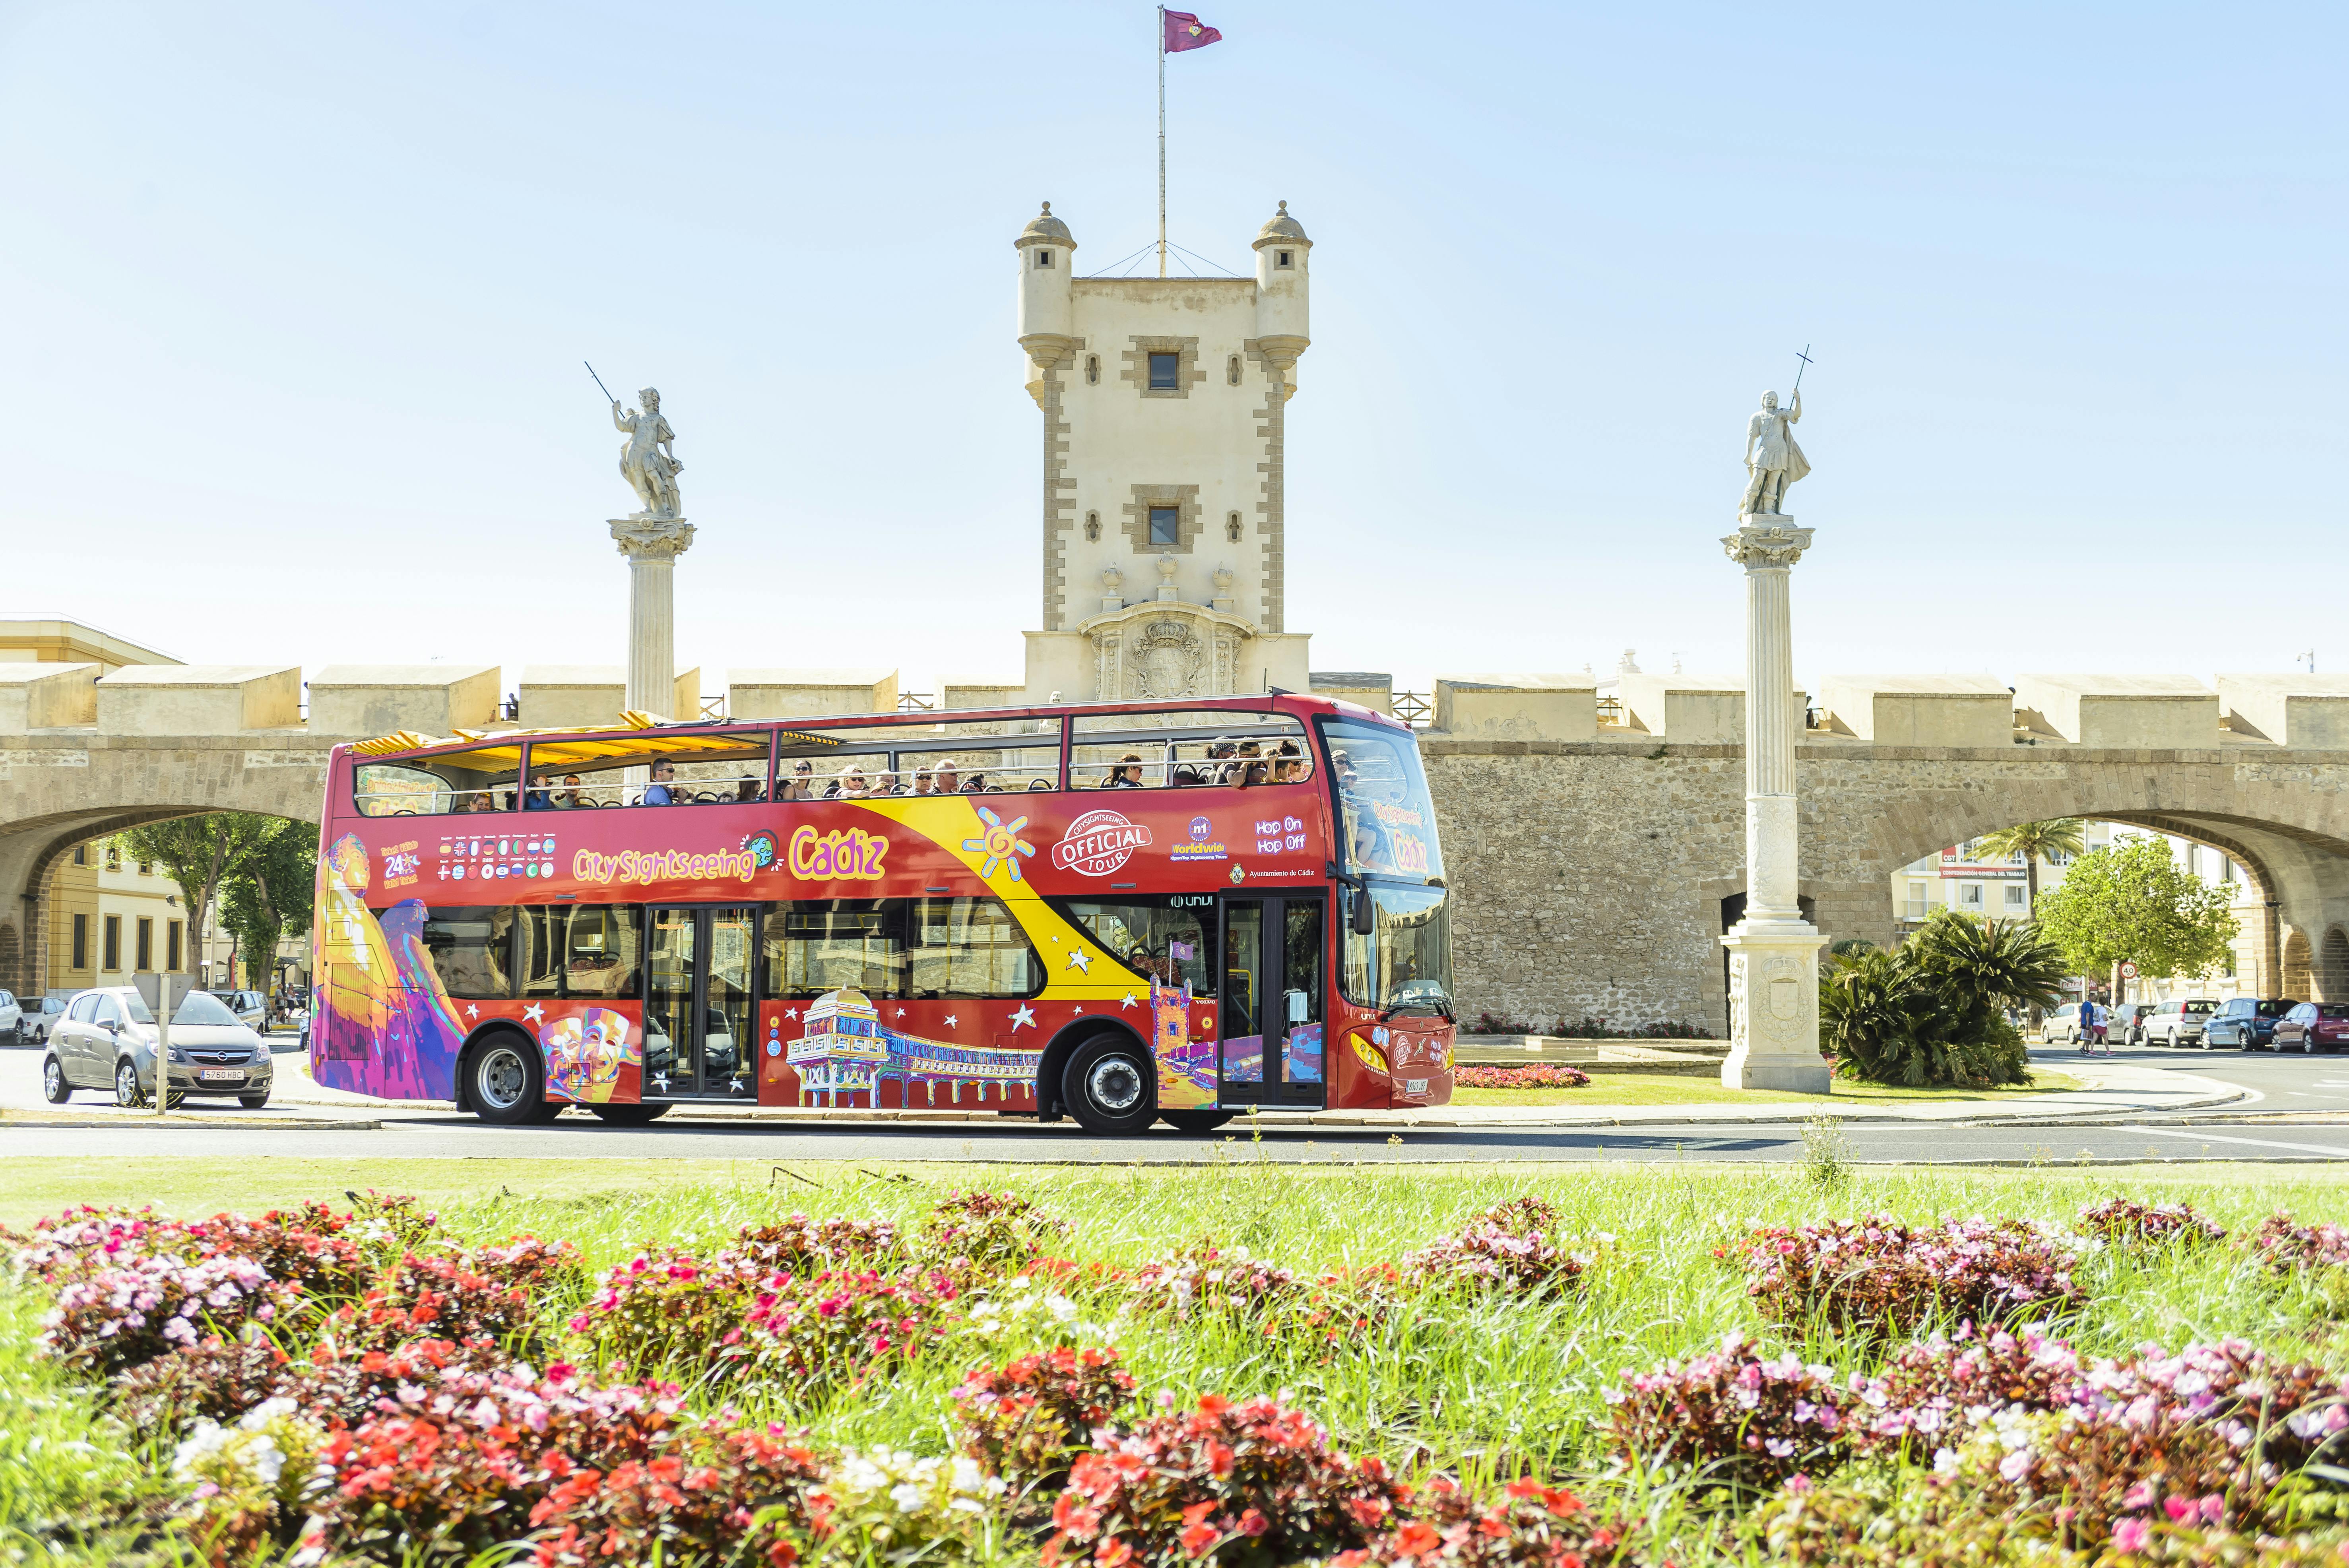 Excursão turística em ônibus hop-on hop-off pela cidade de Cádiz